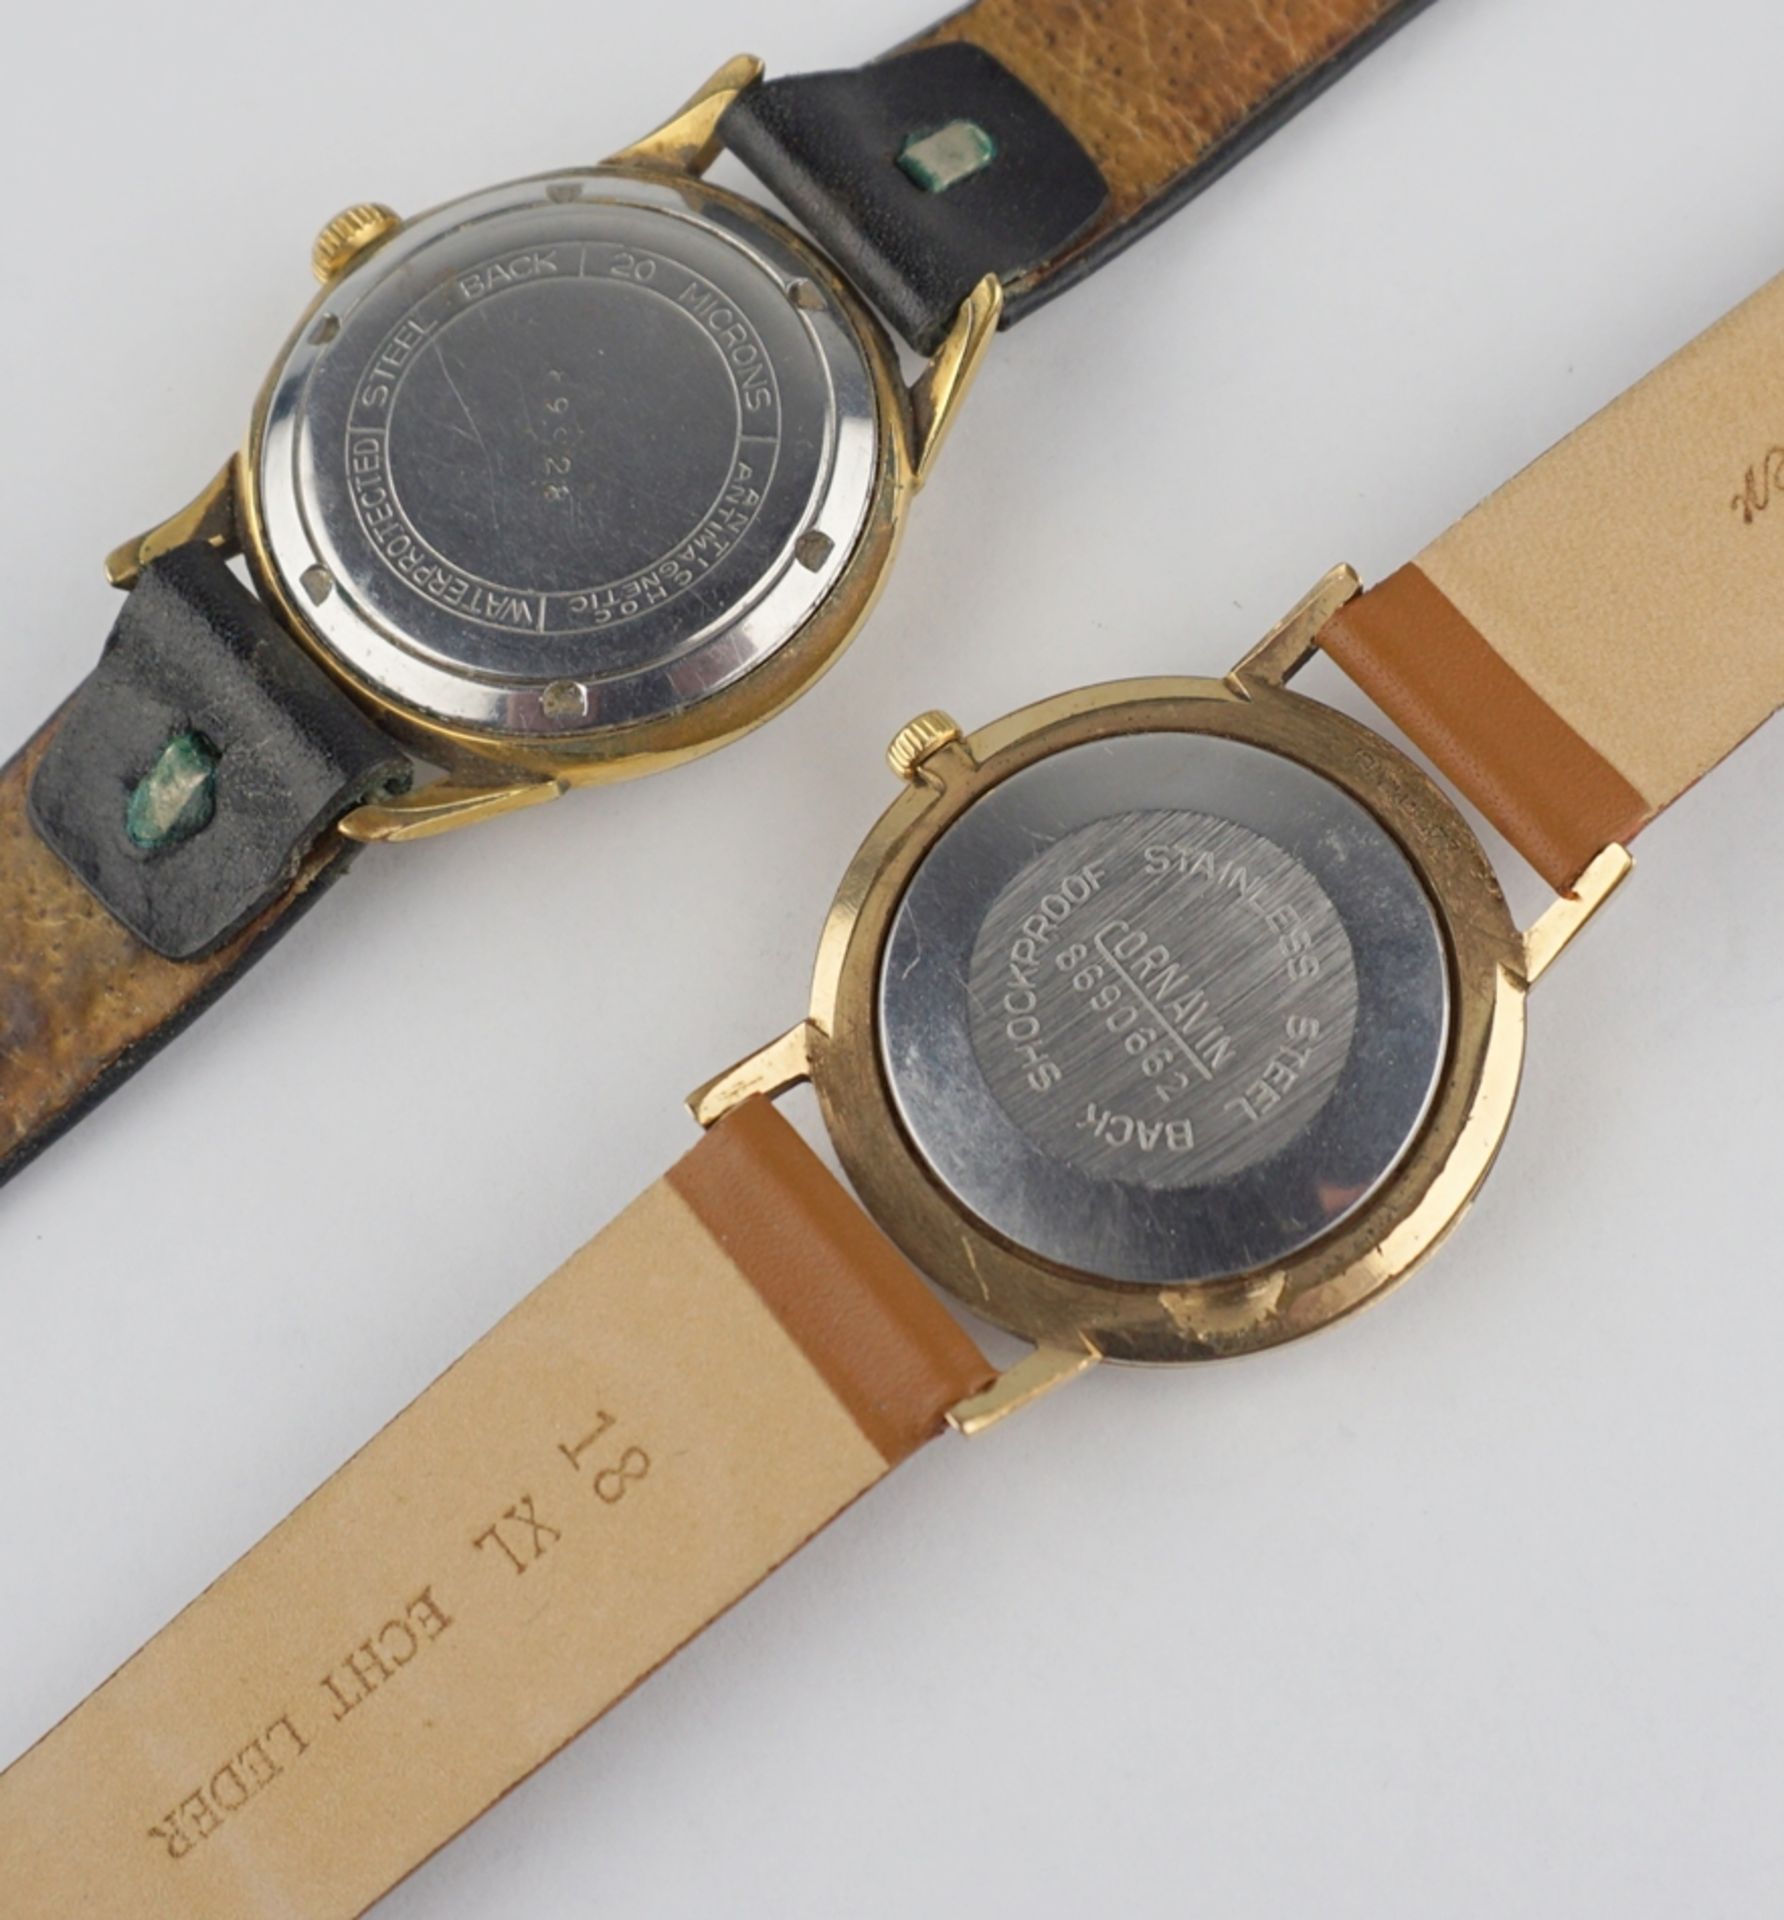 2 Armbanduhren Cornavin und Bifora, 1960er und 1970er Jahre - Image 3 of 3